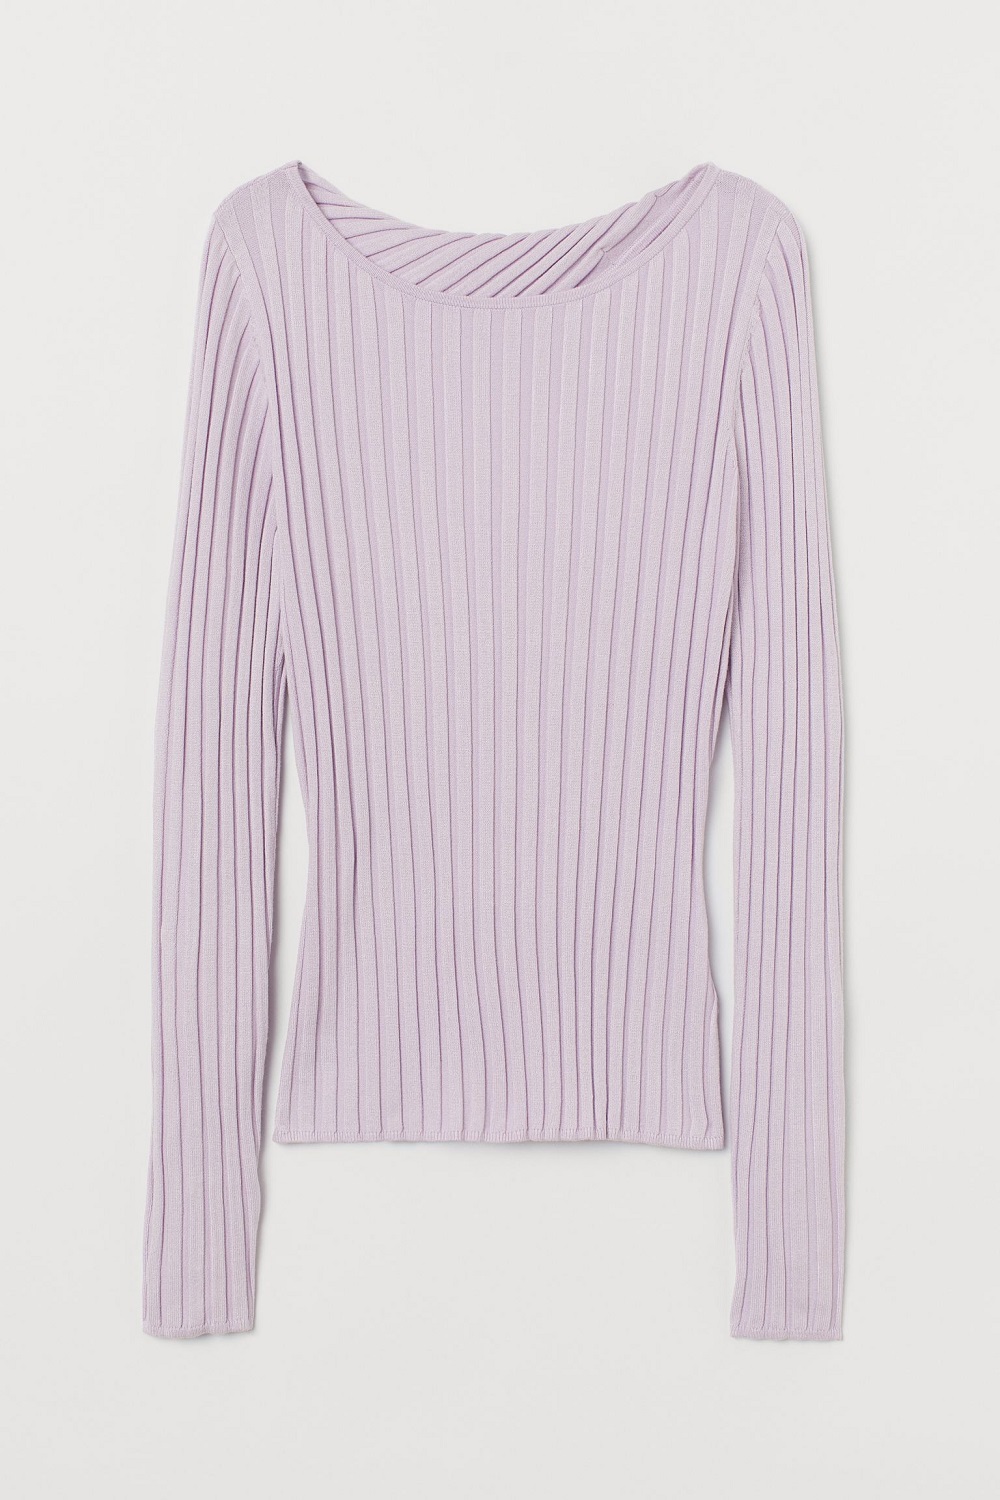 H&M pulover s otvorenim leđima jesen 2020.